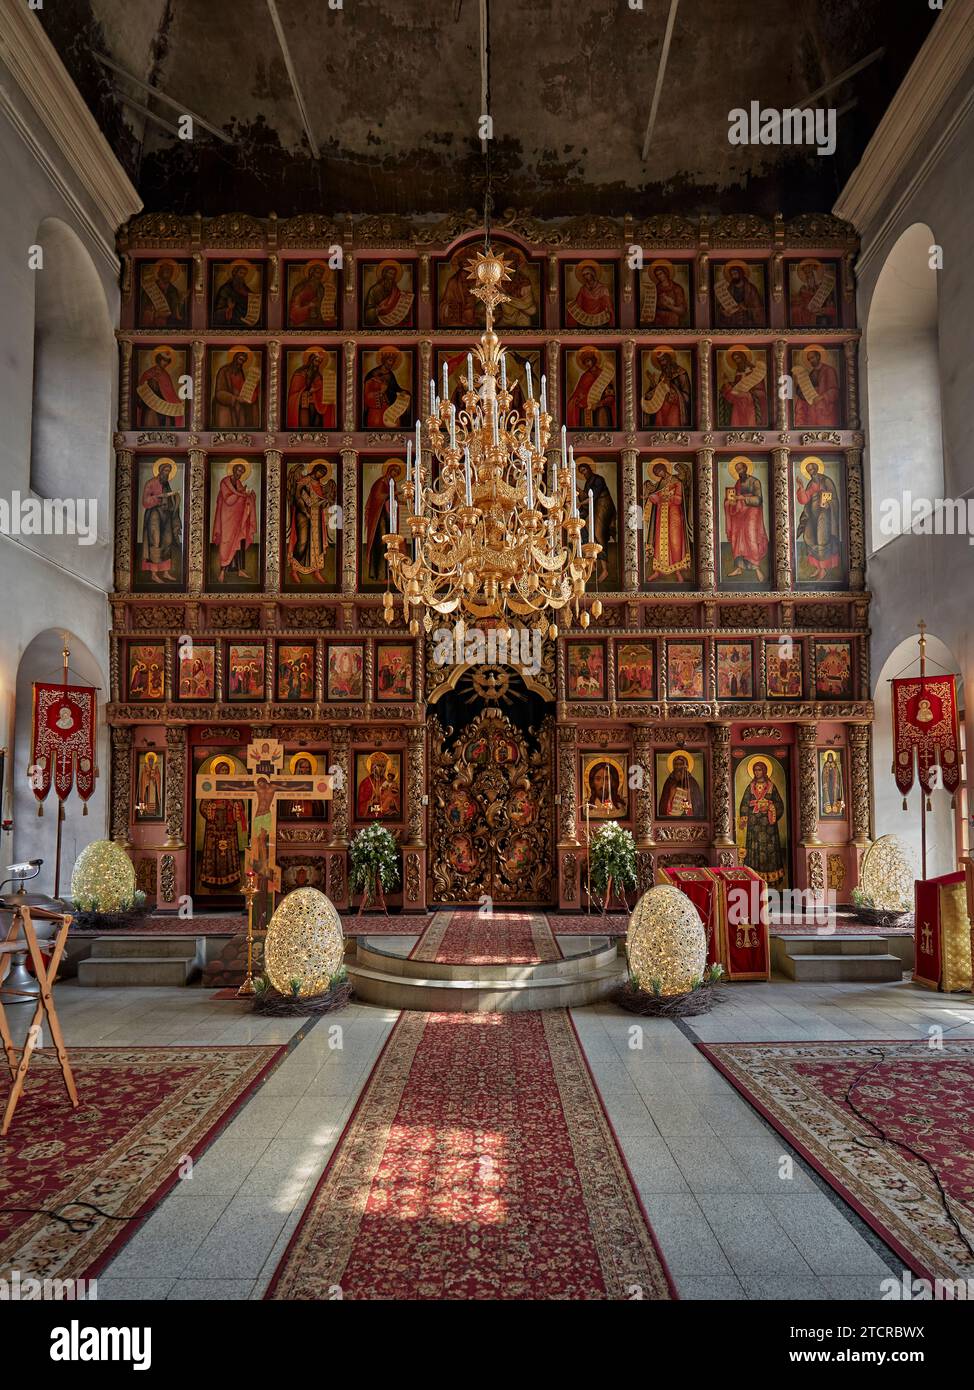 Intérieur de l'église du 17e siècle de Saint Serge de Radonezh au monastère de Vysokopetrovsky (monastère supérieur de Saint-Pierre). Moscou, Russie. Banque D'Images